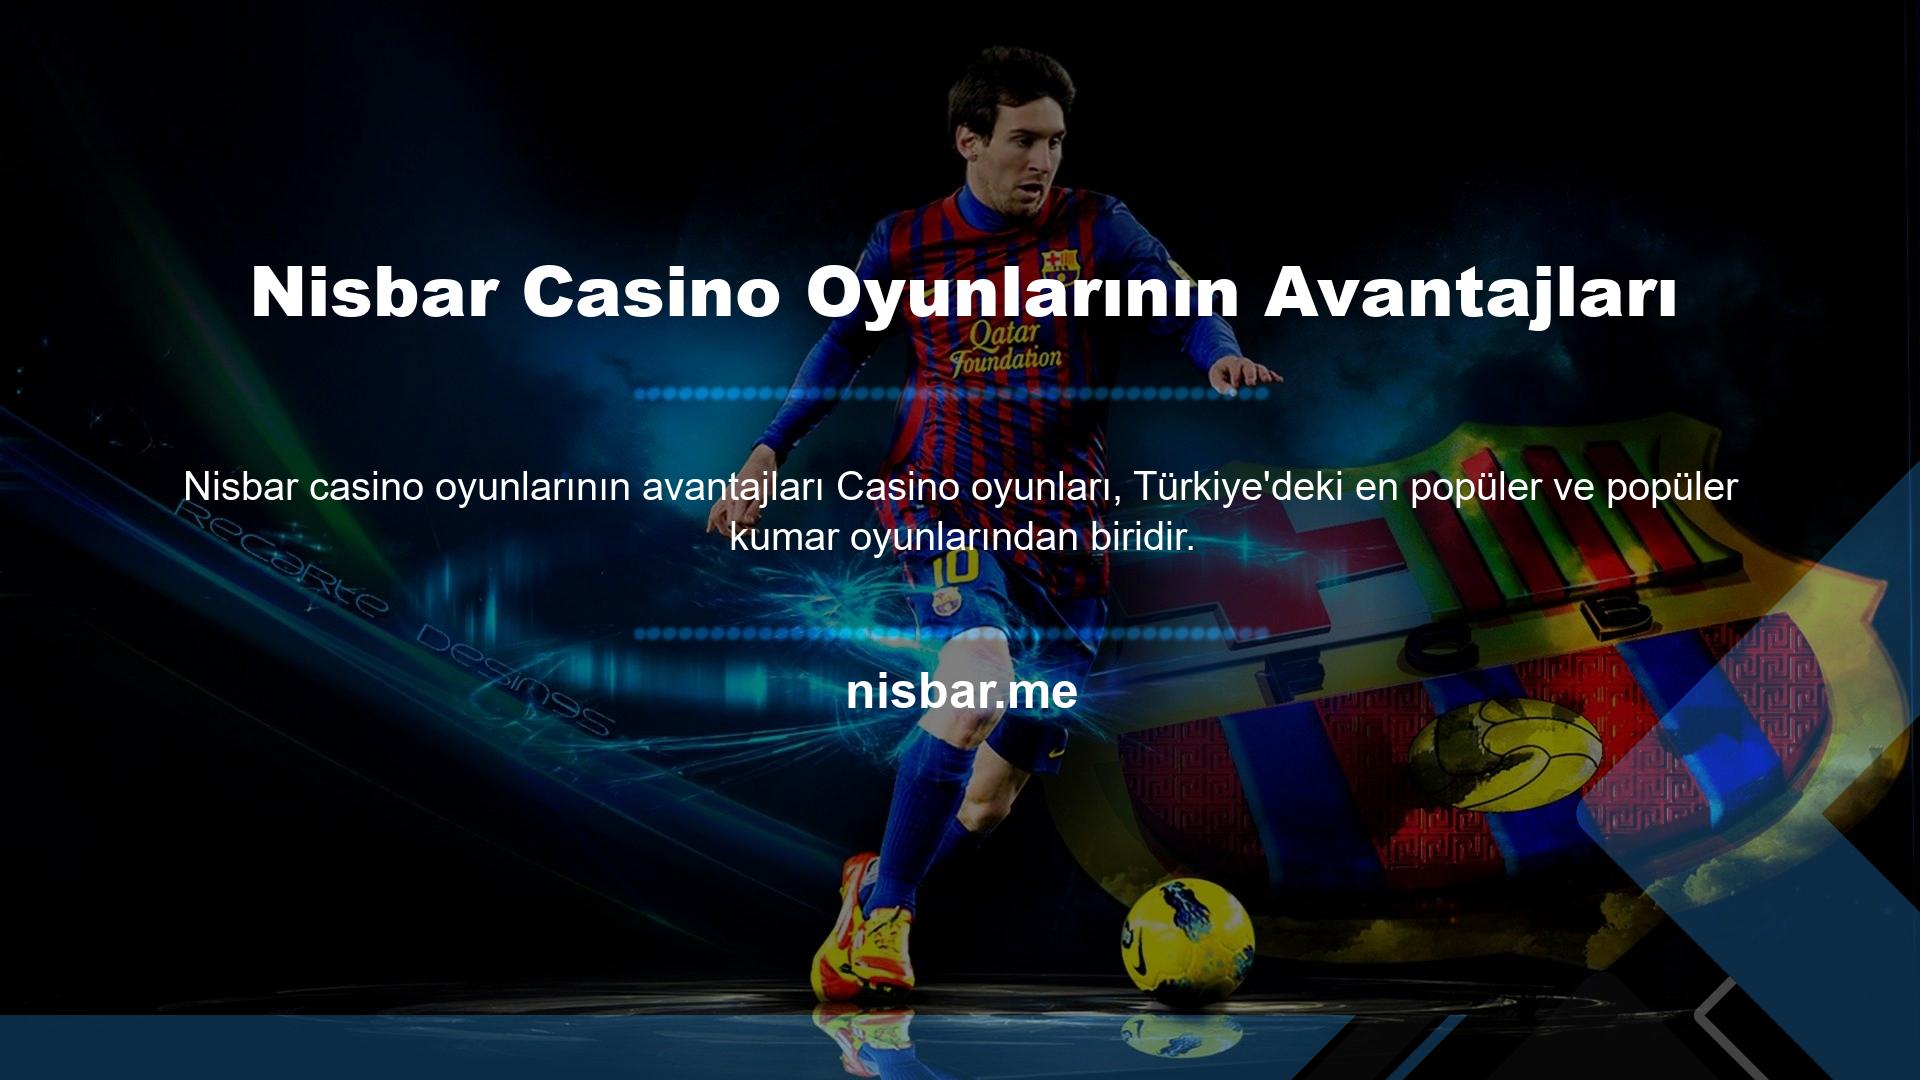 Nisbar Casino Oyunlarının Avantajları